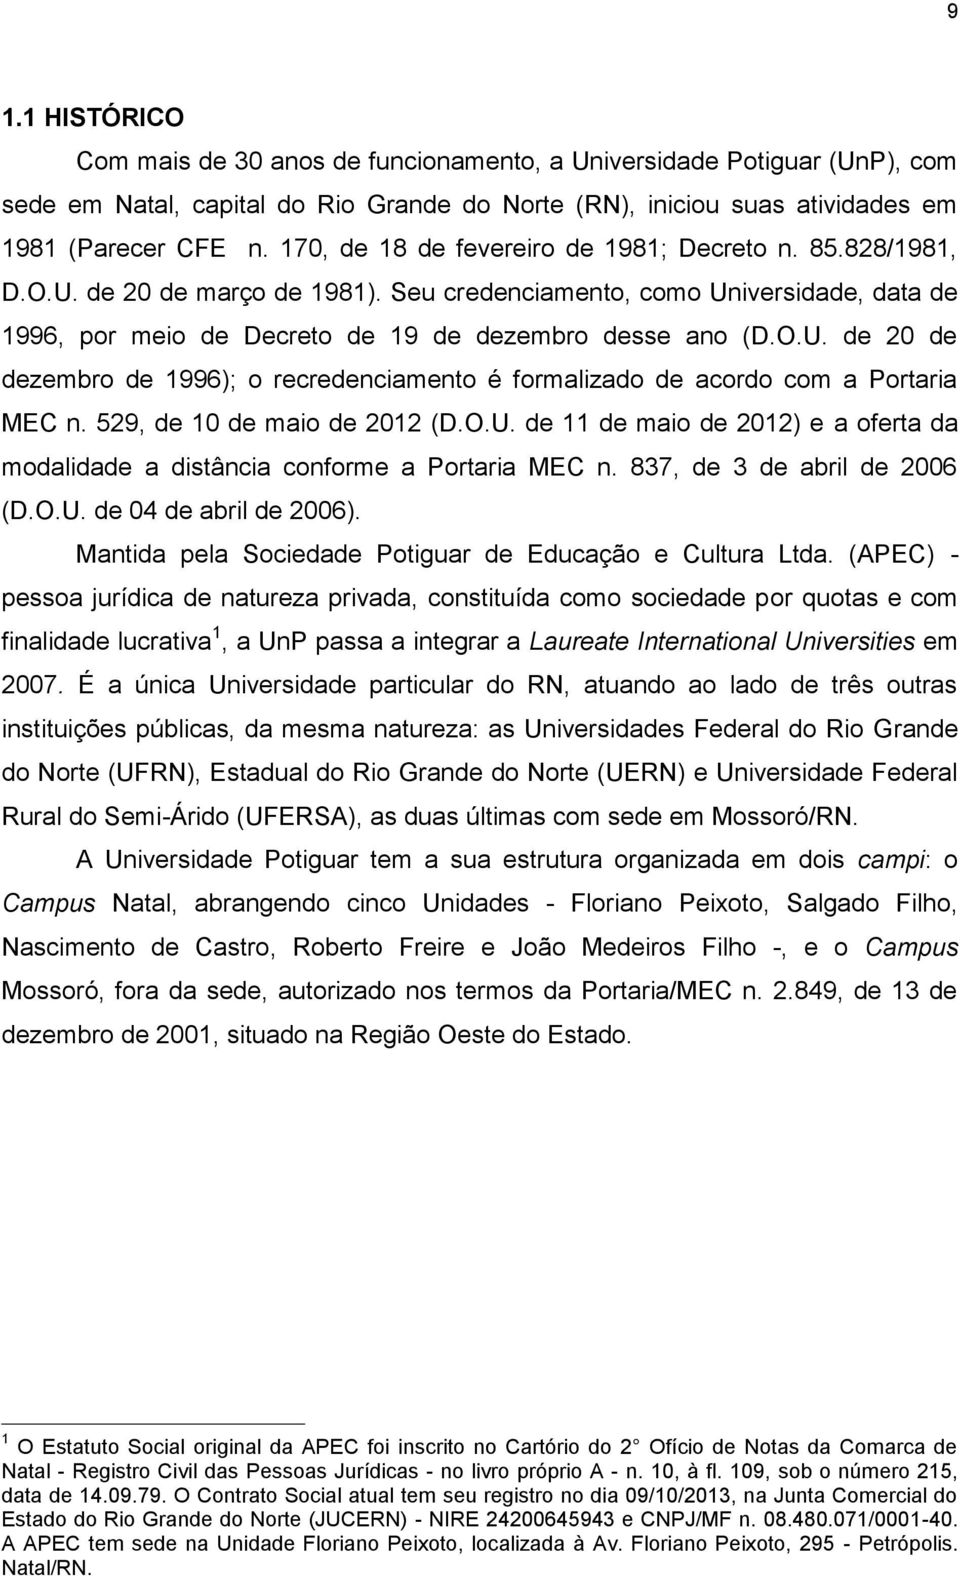 529, de 10 de maio de 2012 (D.O.U. de 11 de maio de 2012) e a oferta da modalidade a distância conforme a Portaria MEC n. 837, de 3 de abril de 2006 (D.O.U. de 04 de abril de 2006).